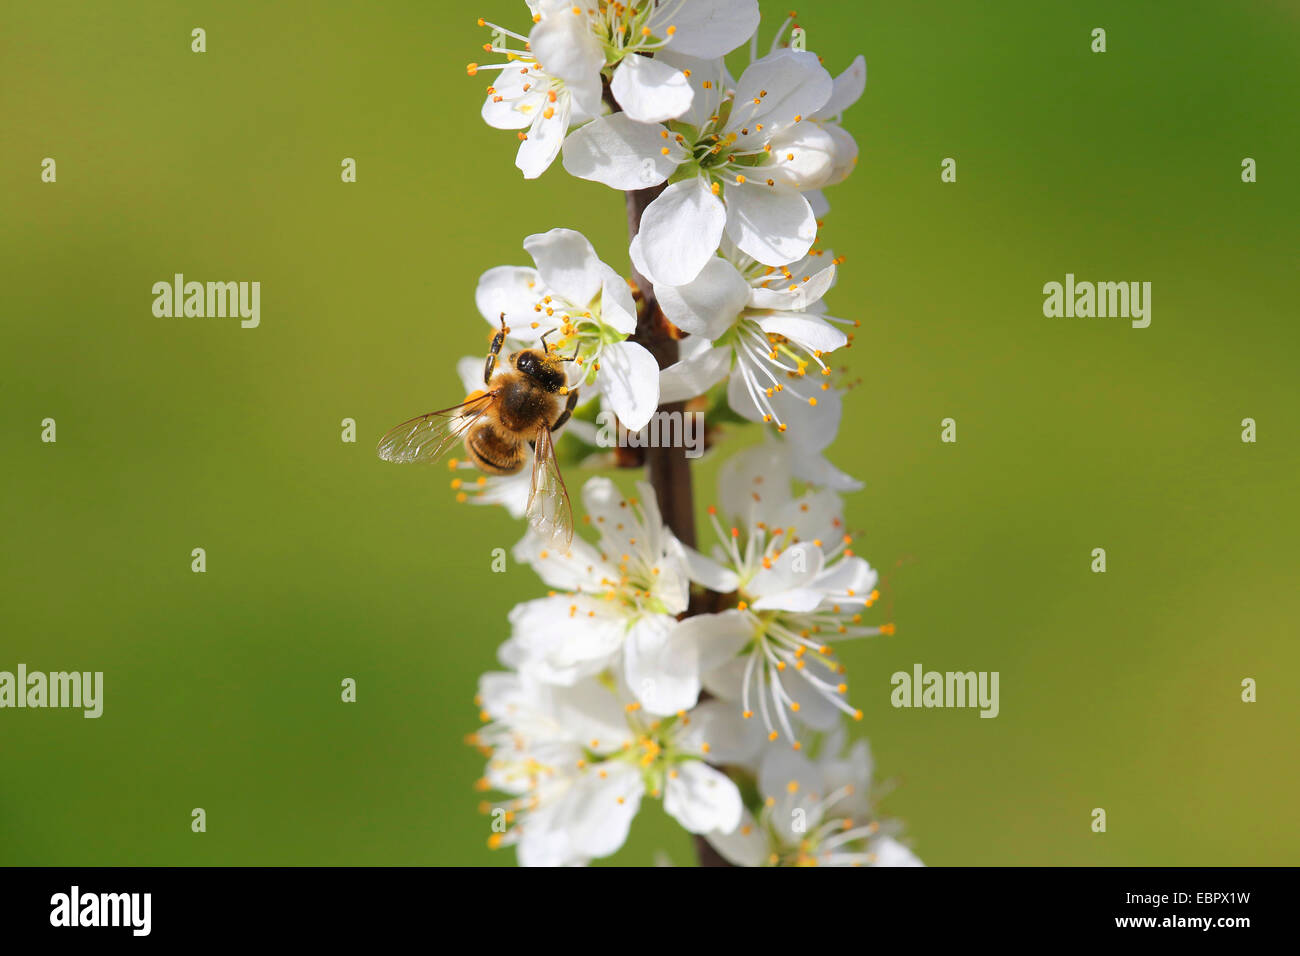 blackthorn, sloe (Prunus spinosa), flowering twig with bee, Germany Stock Photo